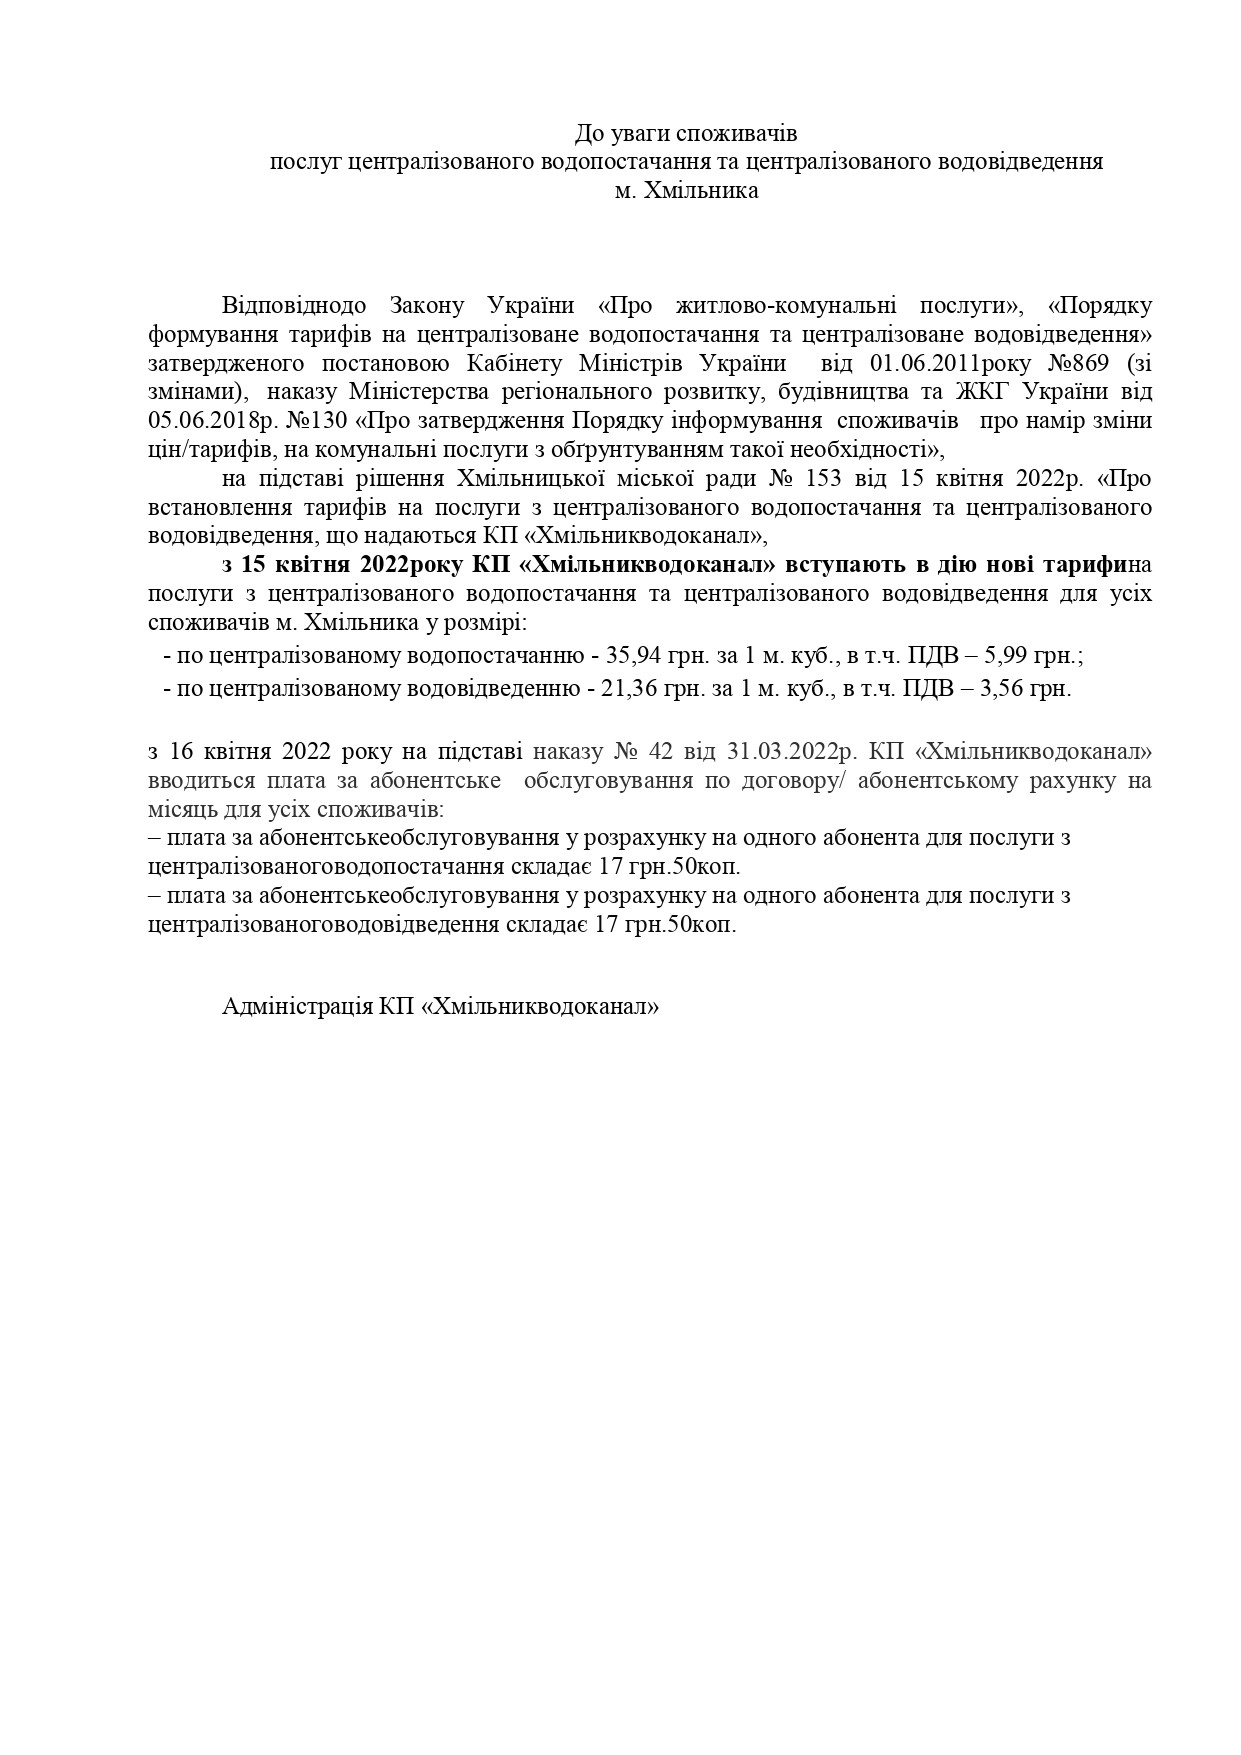 Повідомлення про діючі з 16.04.2022 р. тарифи на централізоване водопостачання та водовідведення КП "Хмільникводоканал"